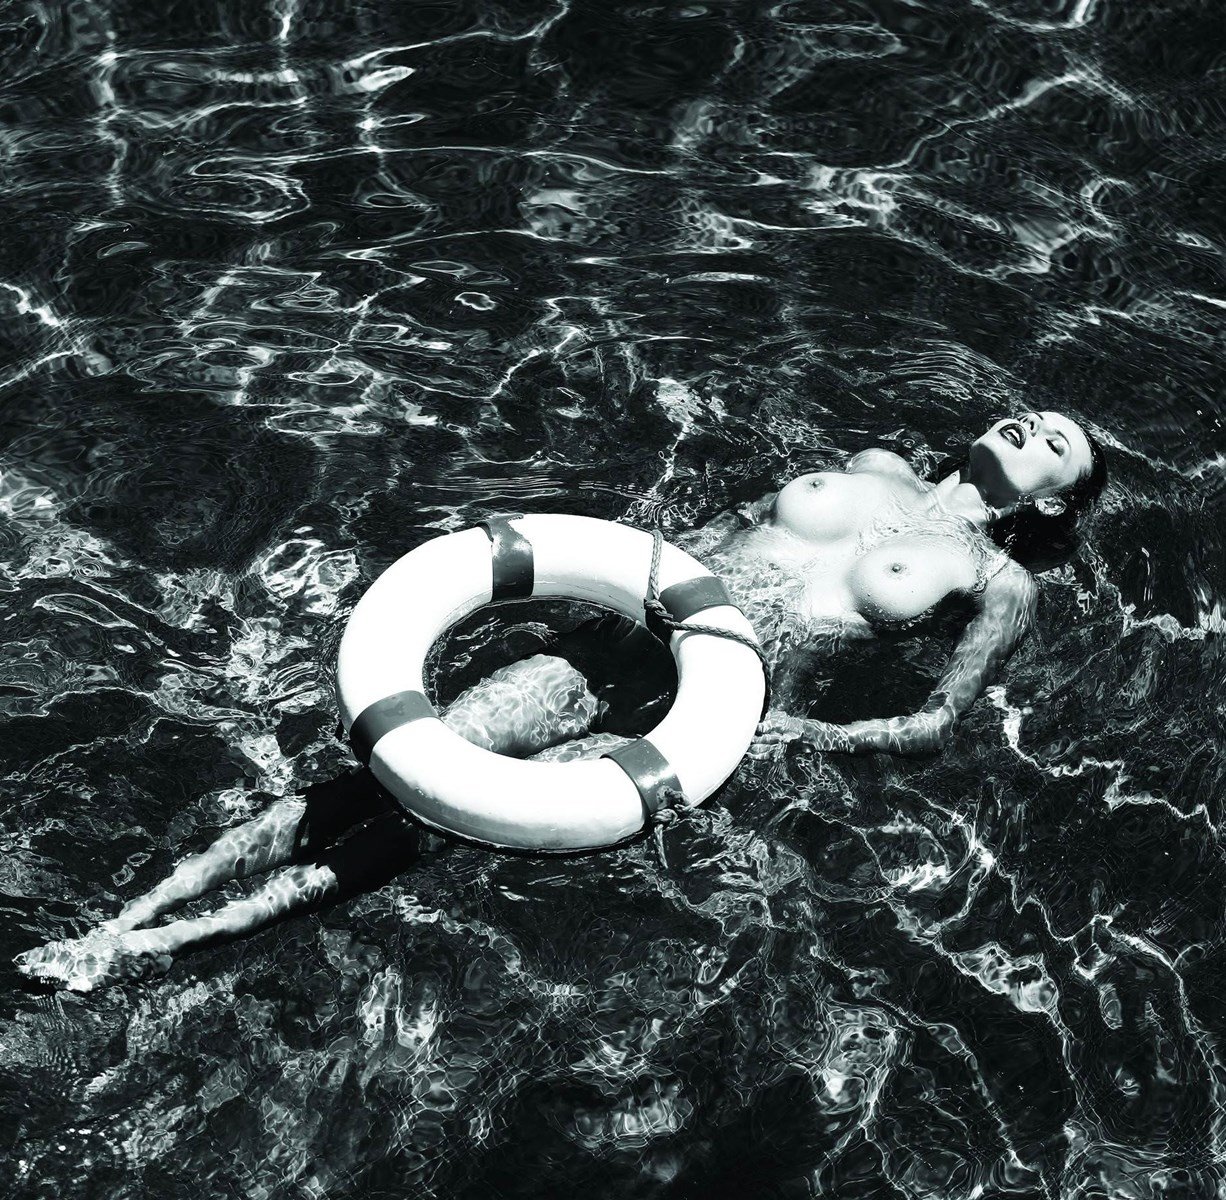 Olga de Mar Nude Photos Collection